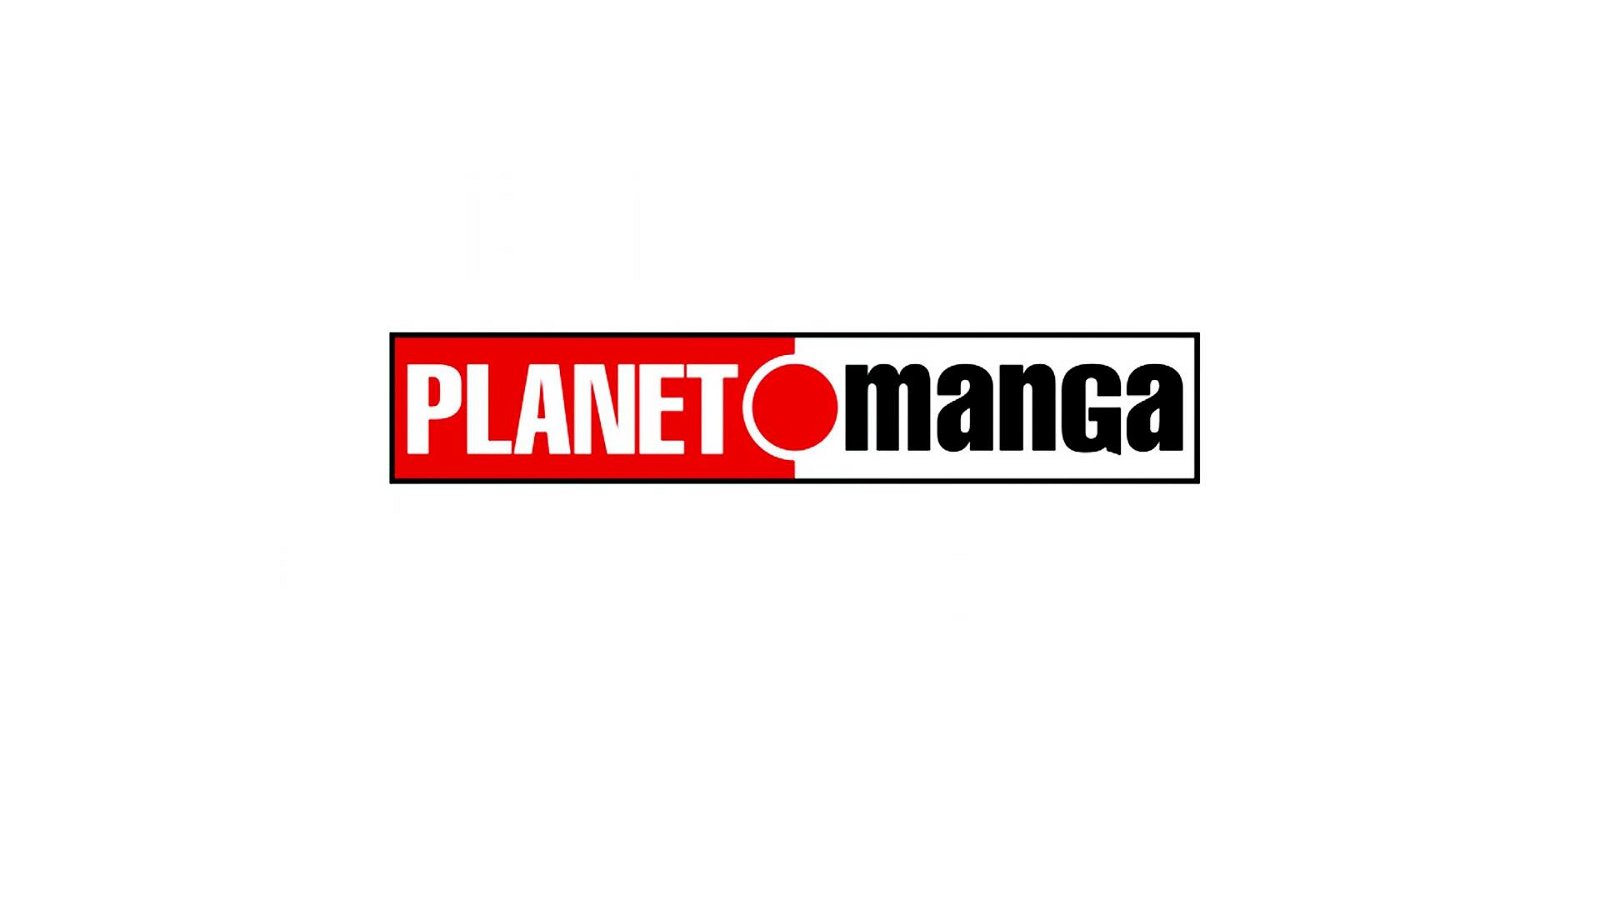 Immagine di Planet Manga, Panini Comics e Marvel: il calendario aggiornato di maggio 2020